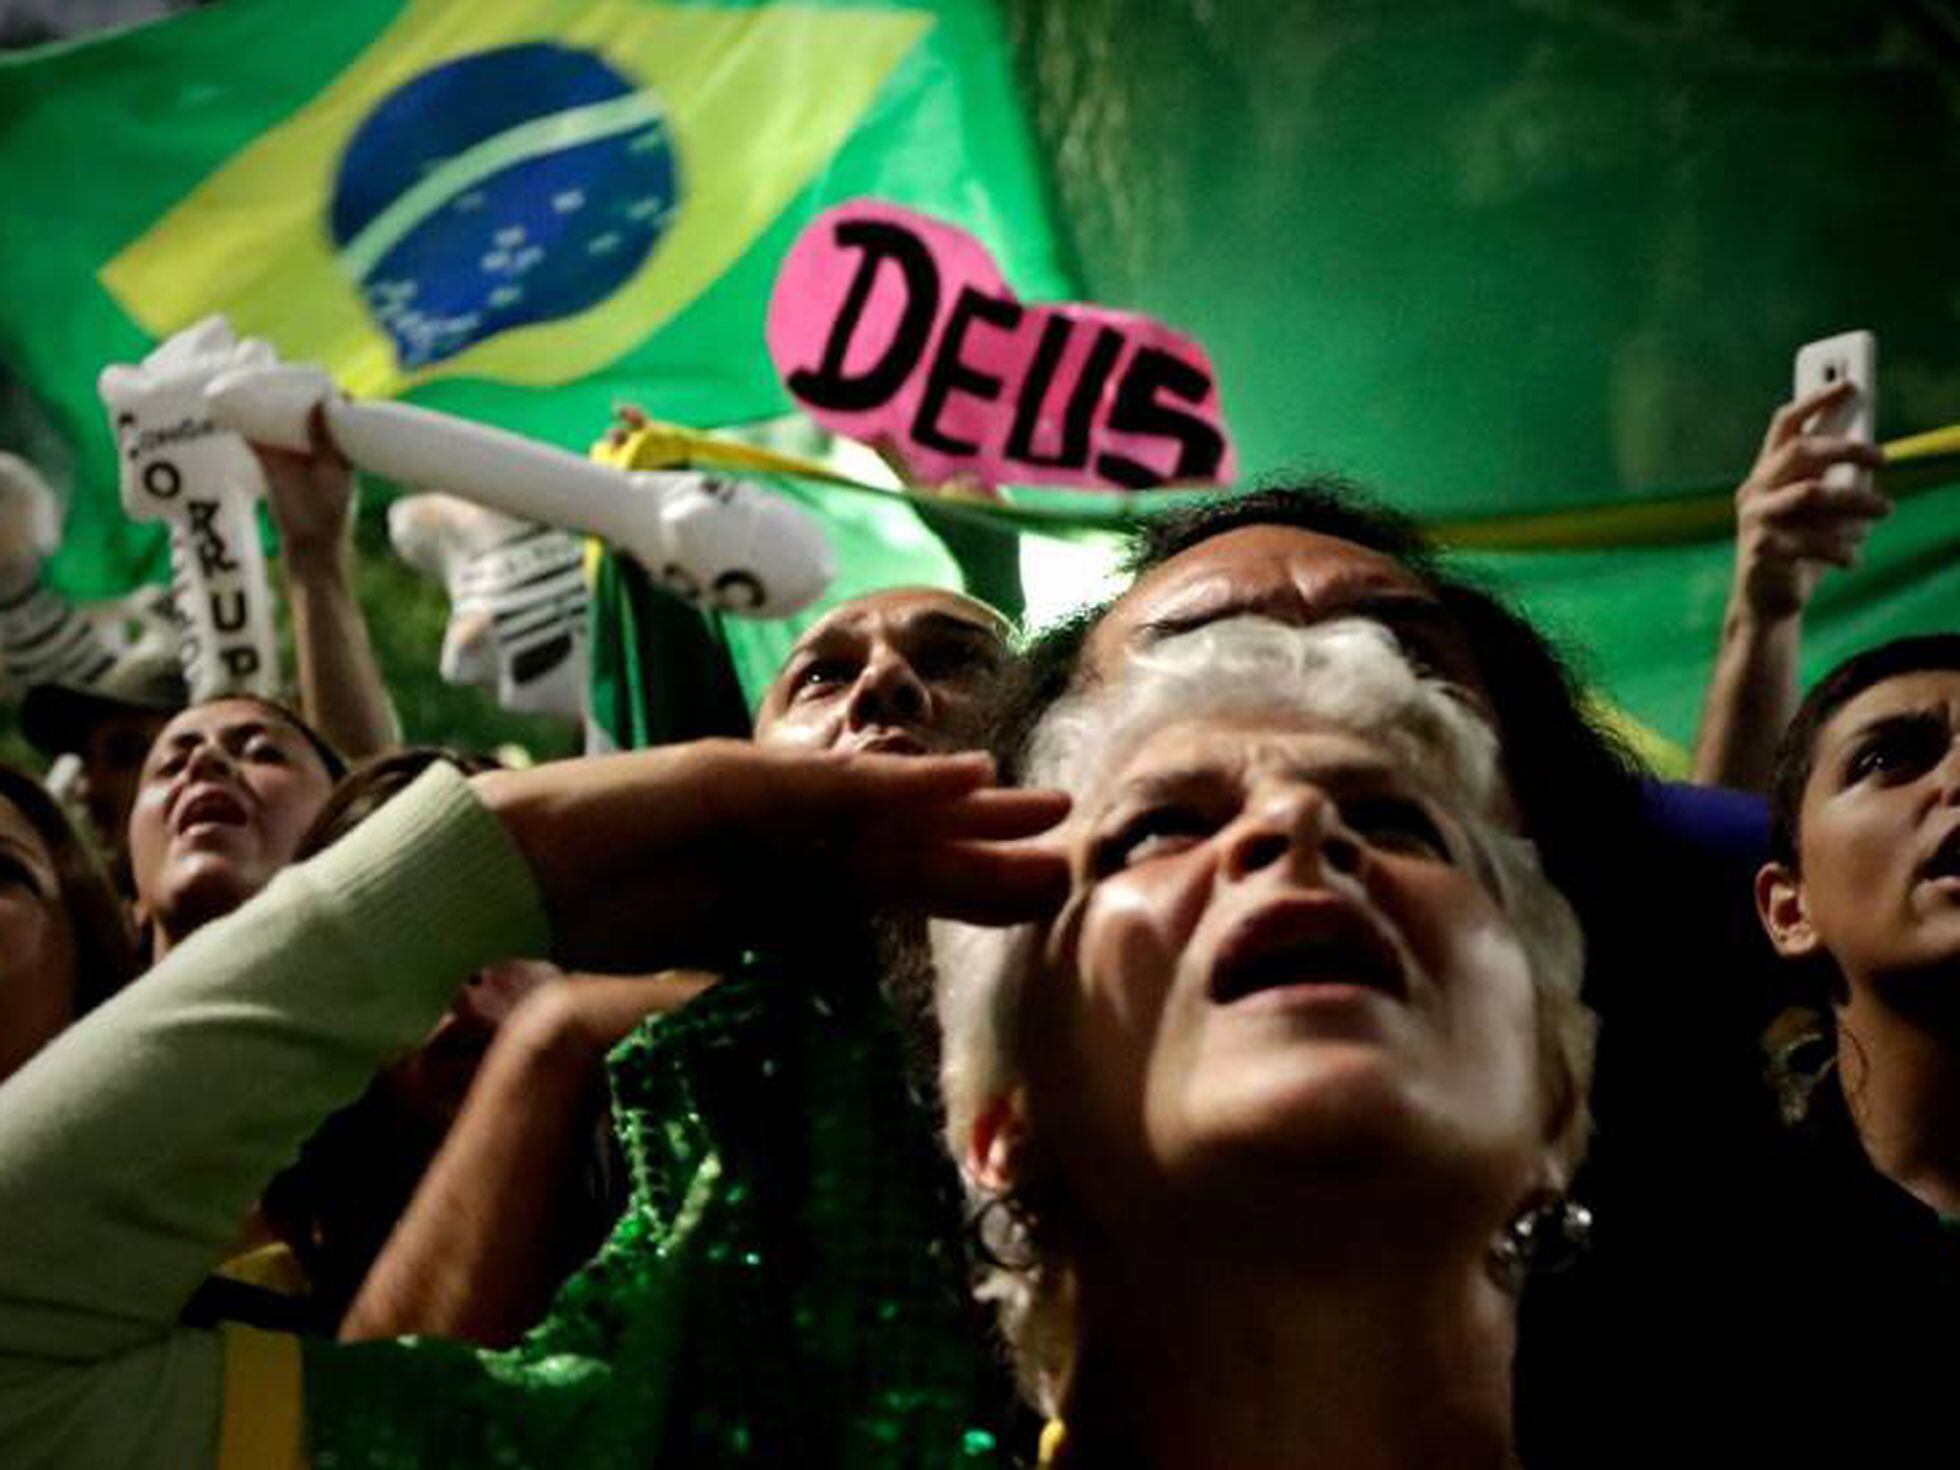 Brás abriga quem chega a São Paulo pela “porta dos fundos”, diz